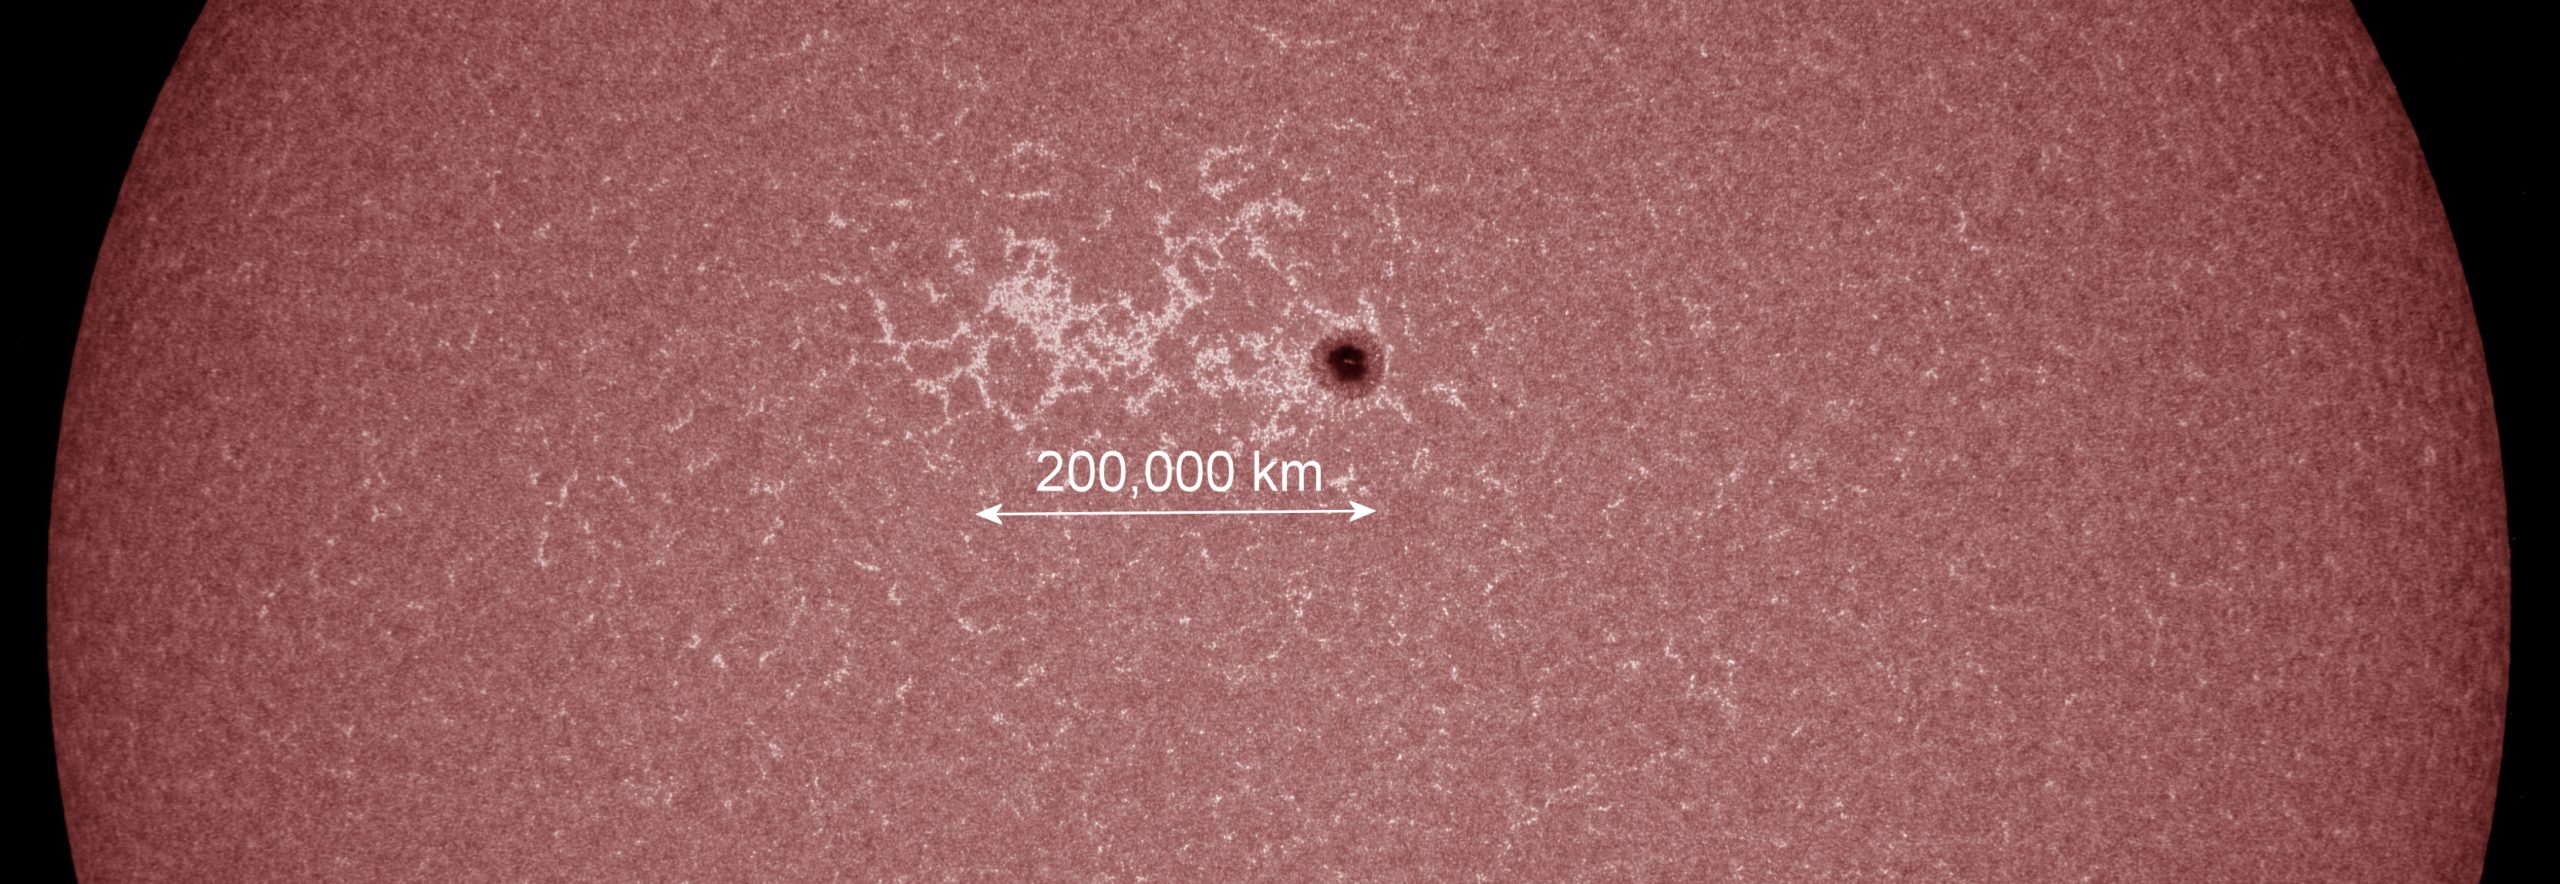 Γιγαντιαία ηλιακή κηλίδα με διάμετρο τρεις φορές σαν την Γη βρίσκεται απέναντι από τον πλανήτη μας